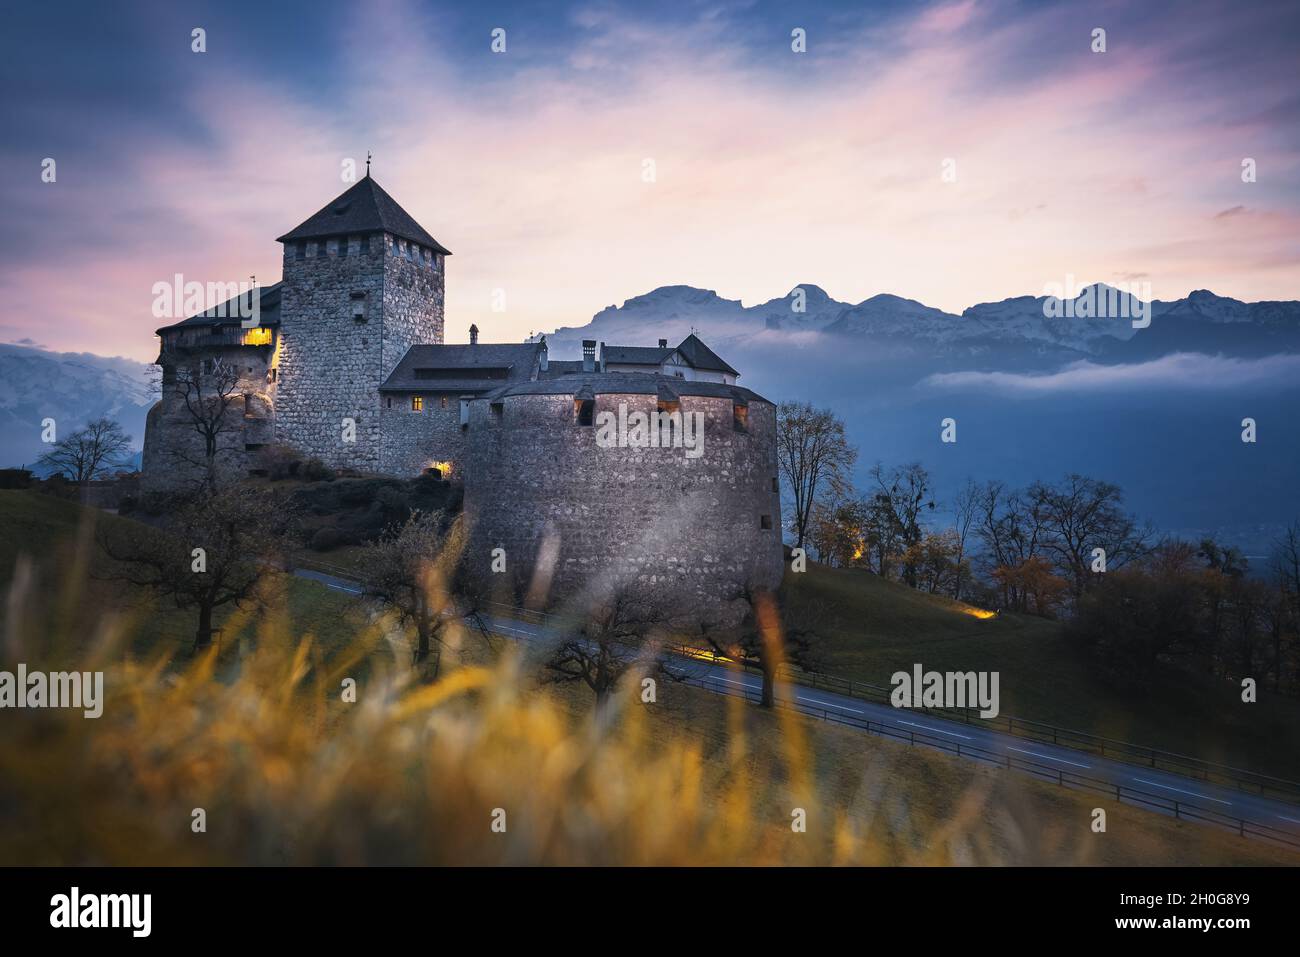 Château de Vaduz au coucher du soleil - Vaduz, Liechtenstein Banque D'Images